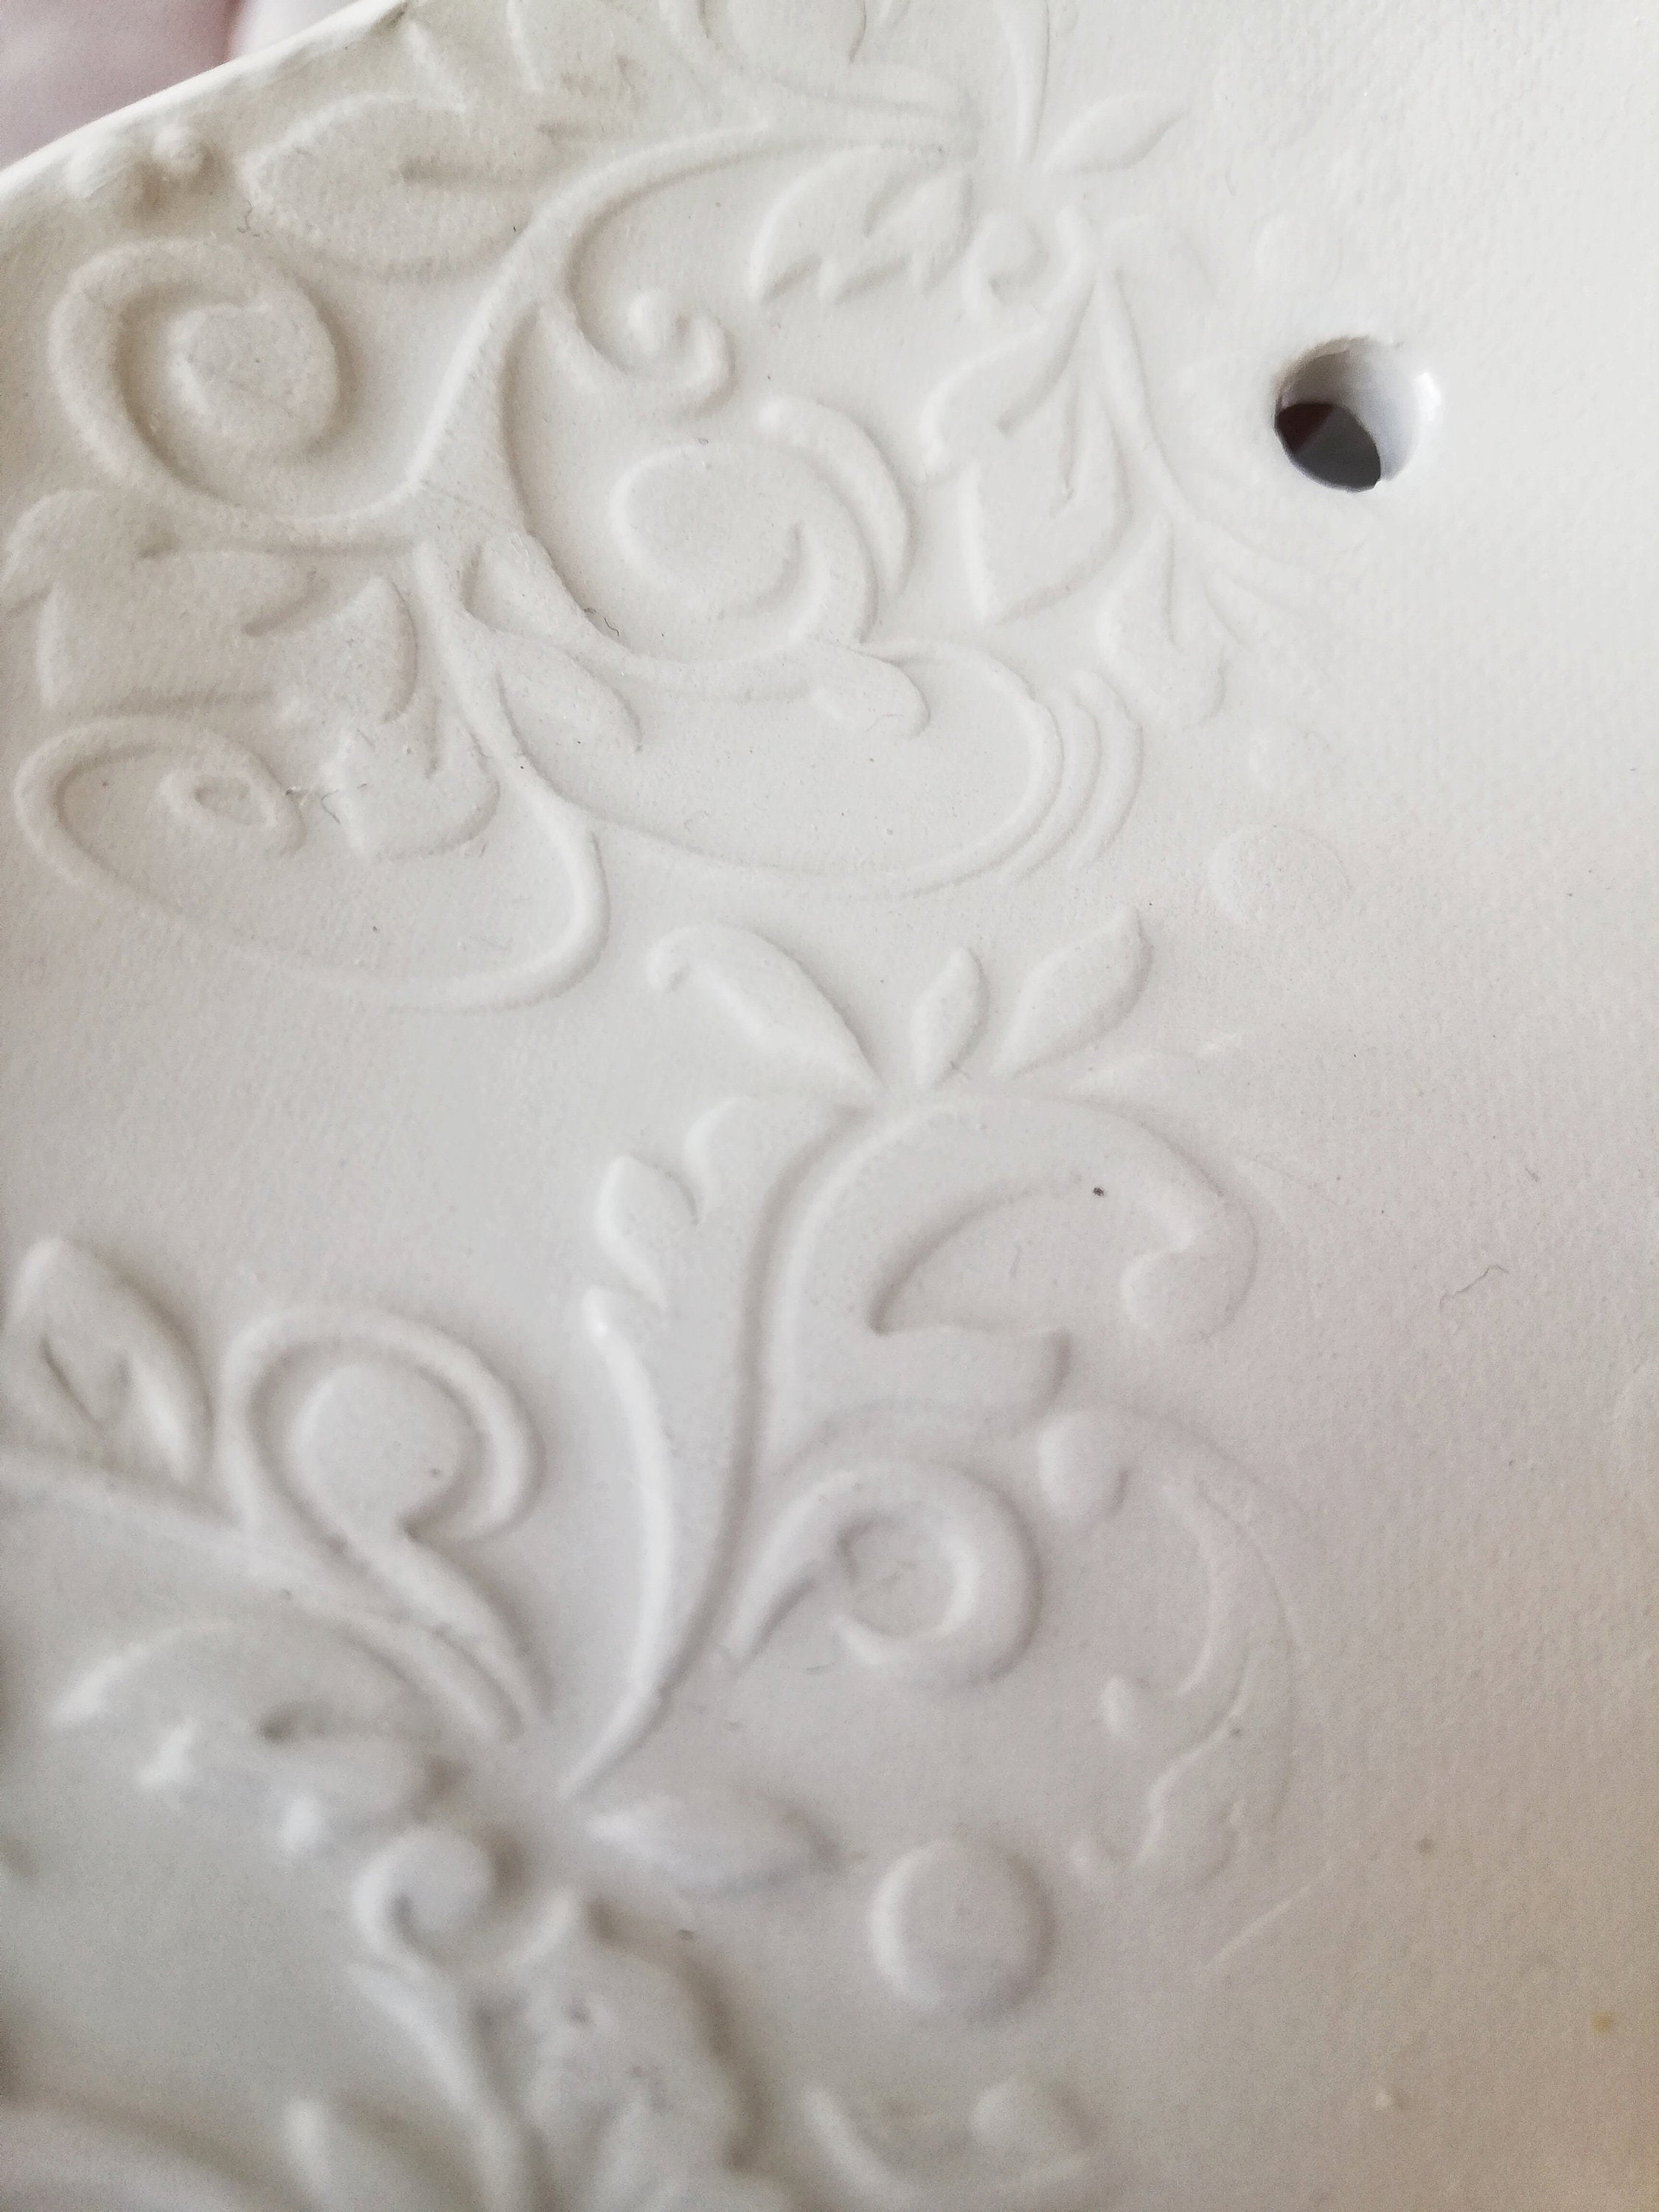 Piattino porta fedi nuziali in ceramica bianco con texture botanica